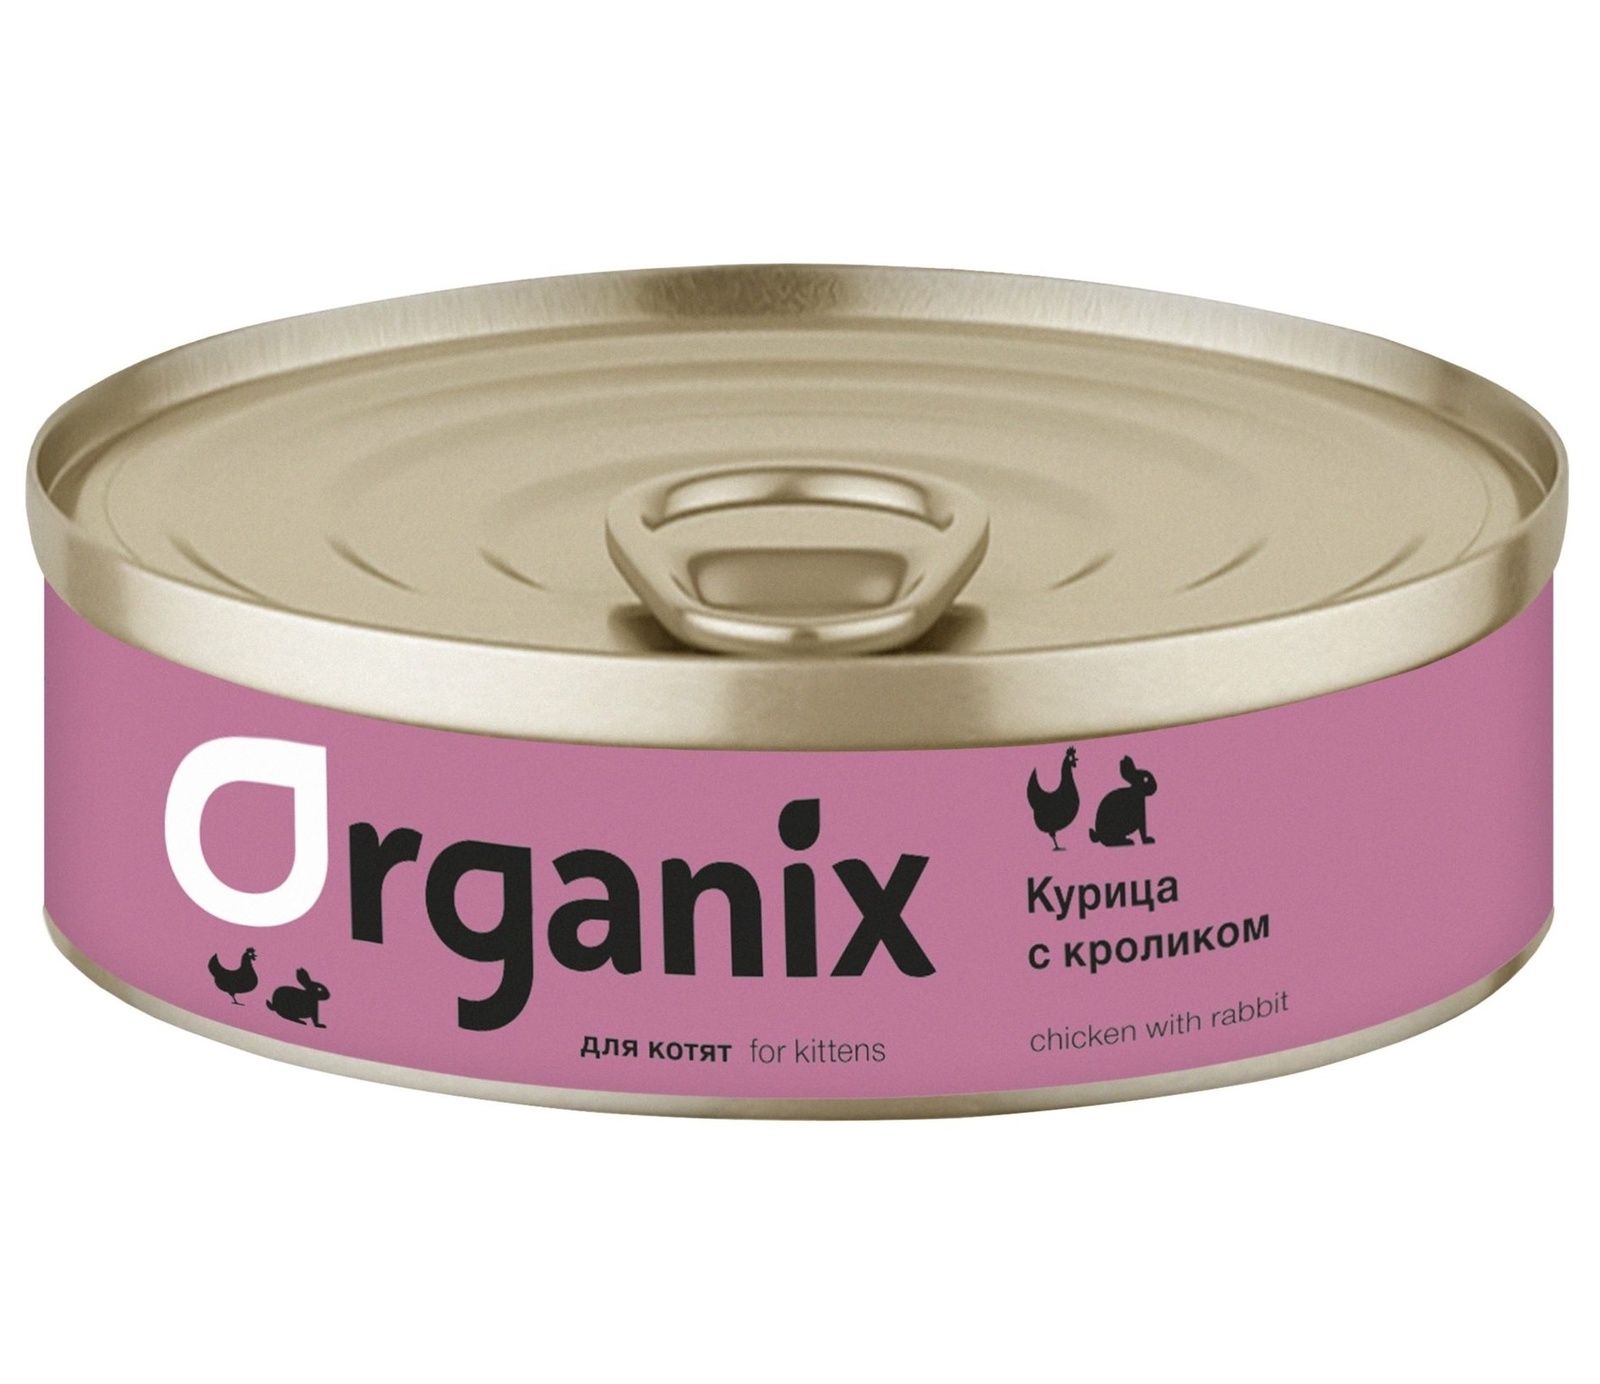 Organix консервы Organix консервы с курочкой и кроликом для котят (100 г)